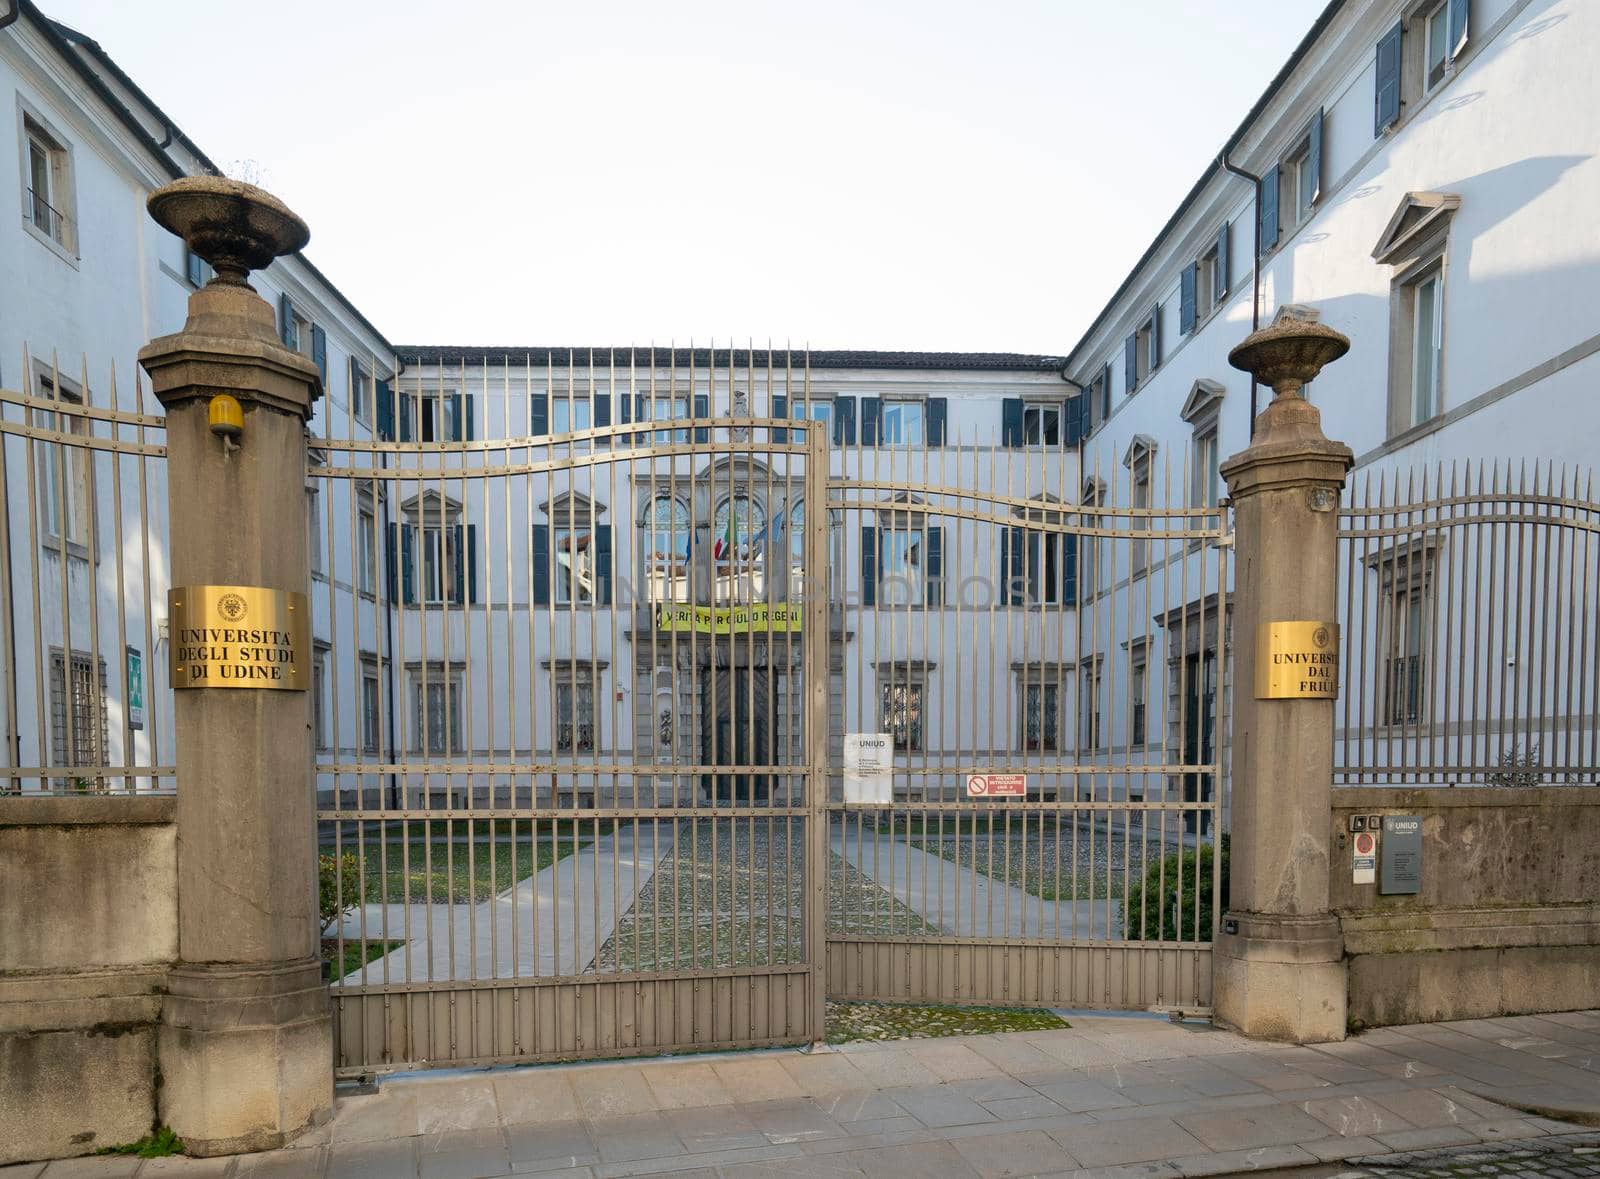 University of Udine by sergiodv